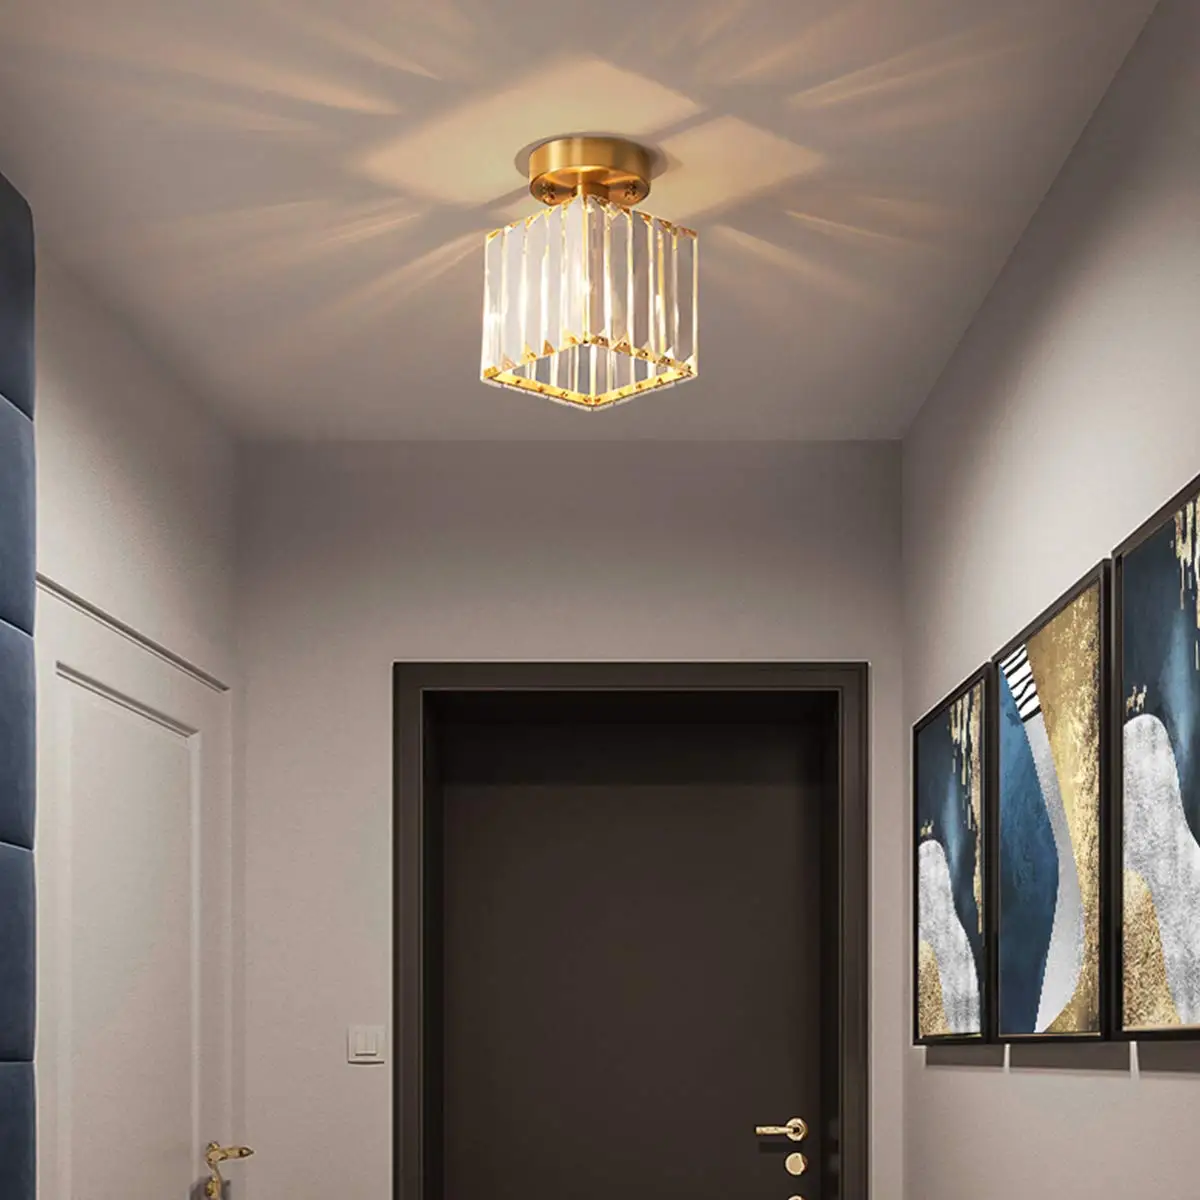 Ganeed Современная полузаподлицо кристальная лампа для потолка стеклянная потолочная лампа мини-лампа для прихожей Entryway спальни, квадратная Золотая